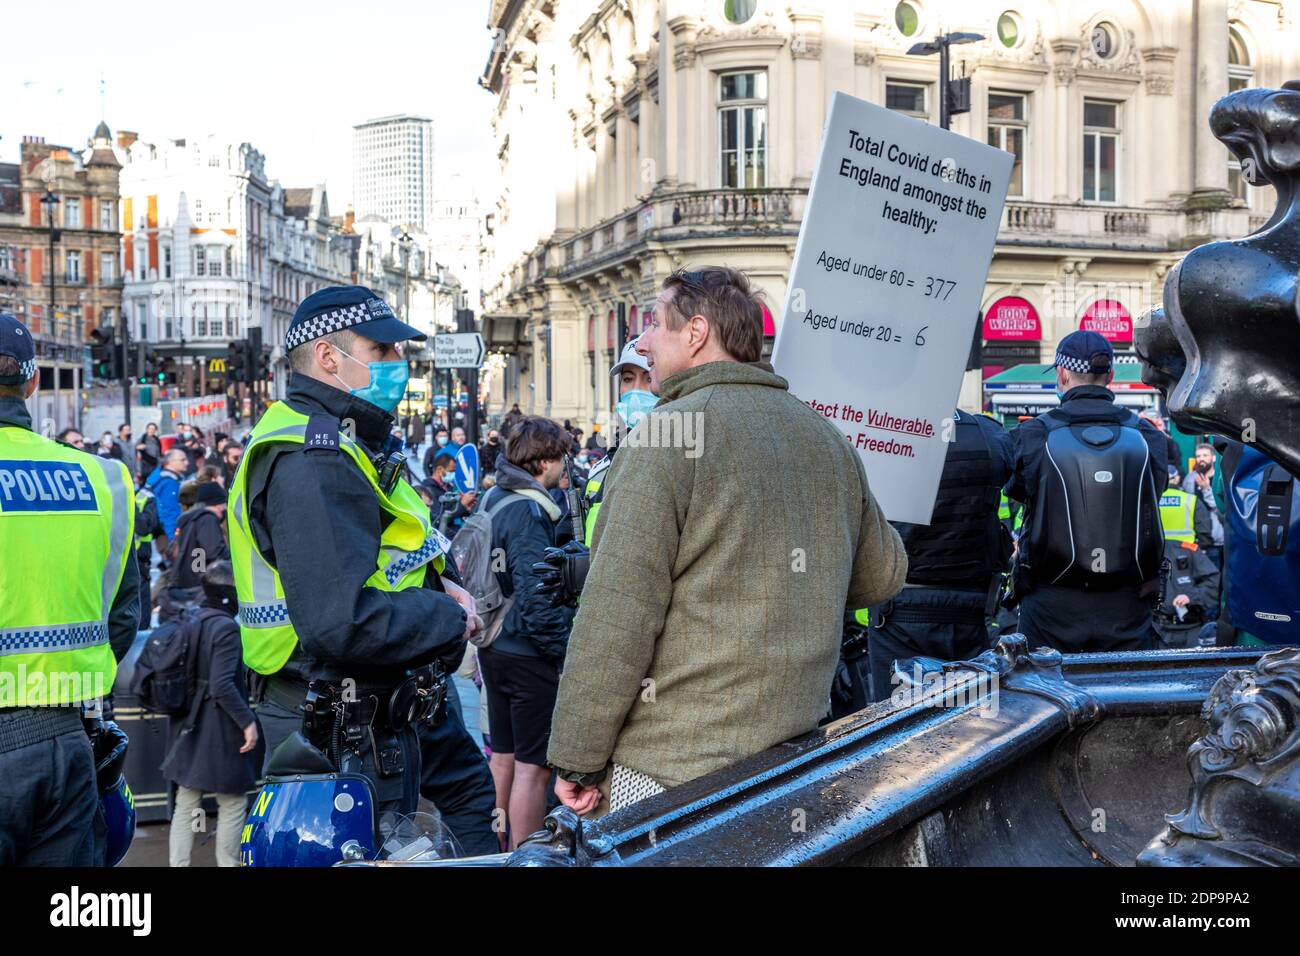 Londres, Inglaterra. 19 de diciembre de 2020. Protesta contra el cierre en la Plaza del Parlamento. Fotógrafo : Brian Duffy Foto de stock